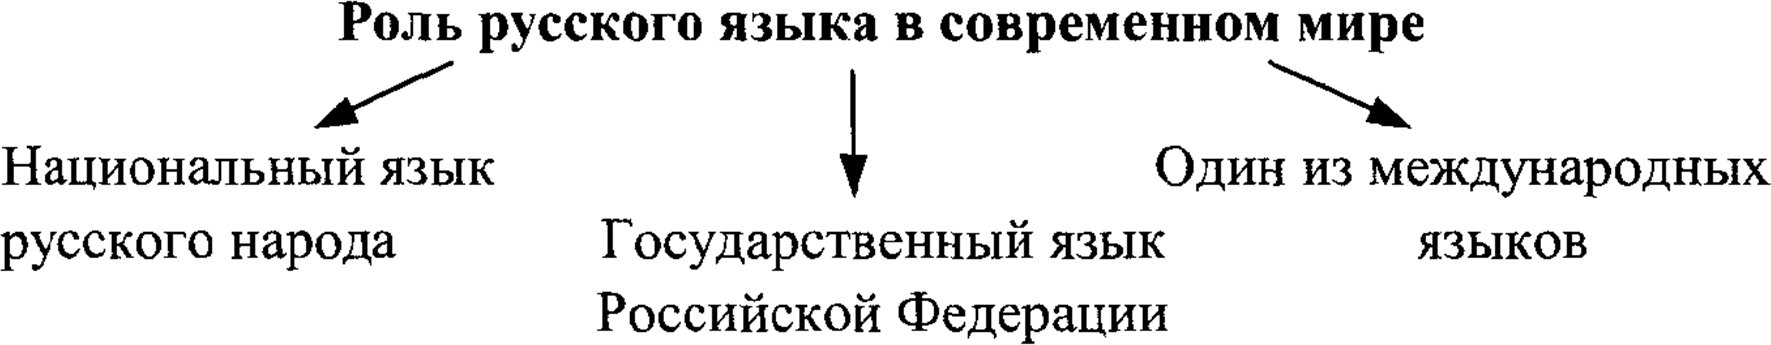 Роль русского языка в современном языке